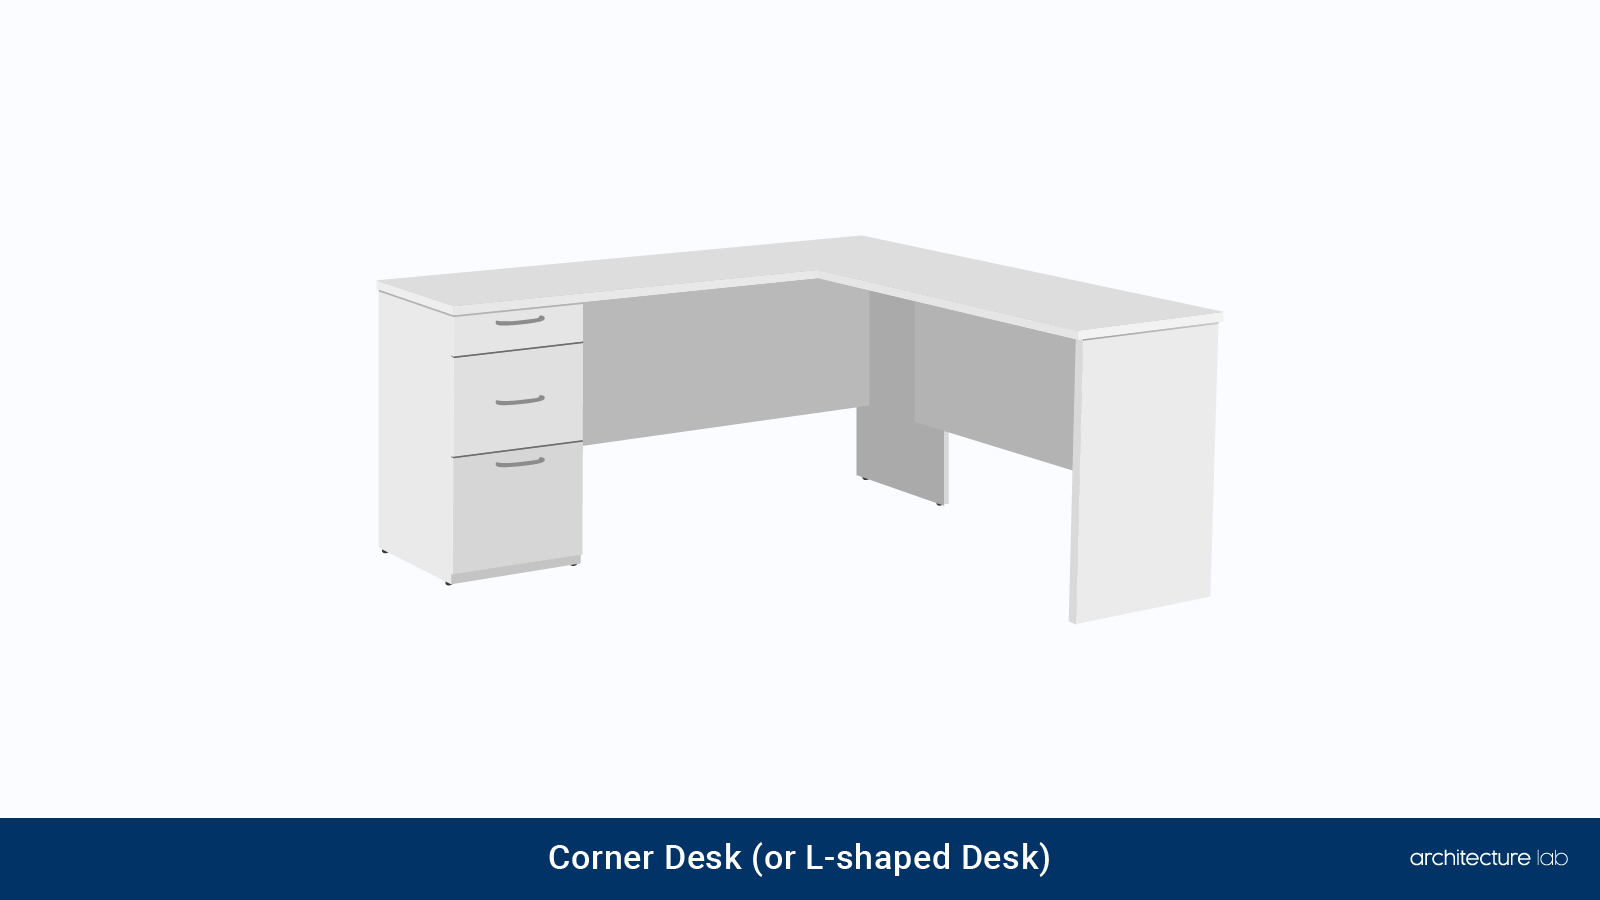 5. Corner desk (or l-shaped desk)